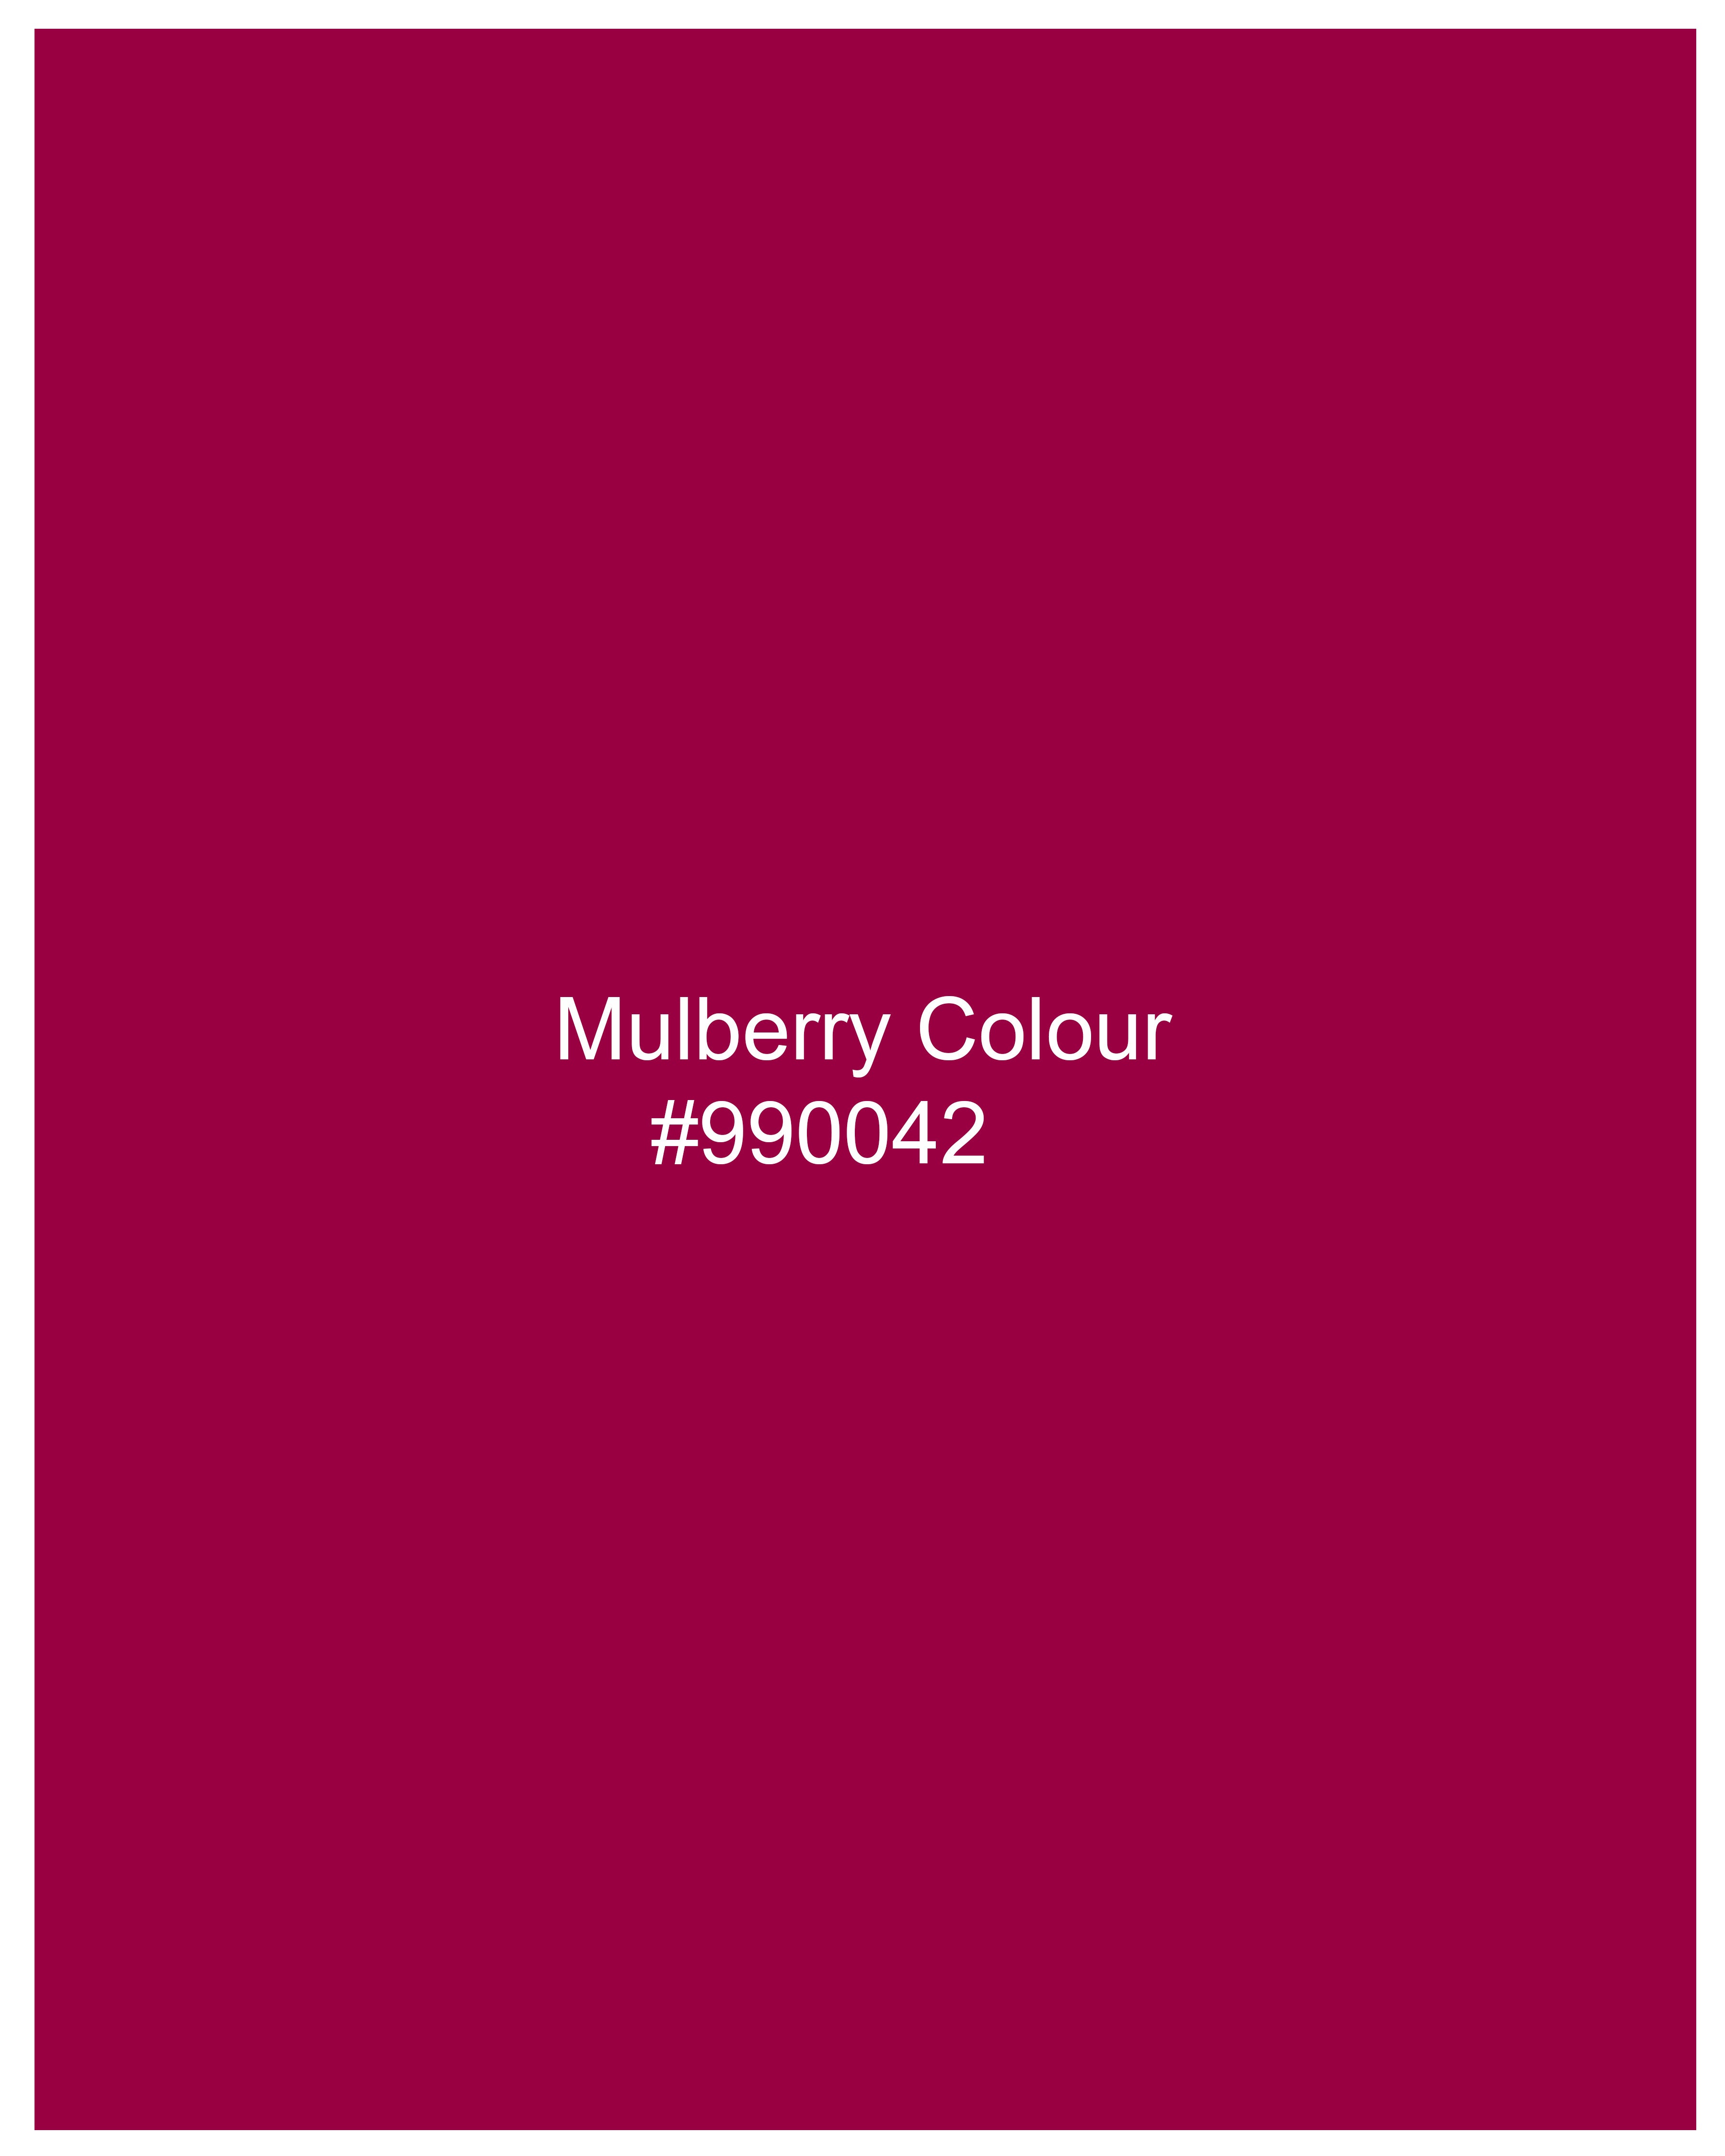 Mulberry Pink Viscose flared Top WTP029-32, WTP029-34, WTP029-36, WTP029-38, WTP029-40, WTP029-42